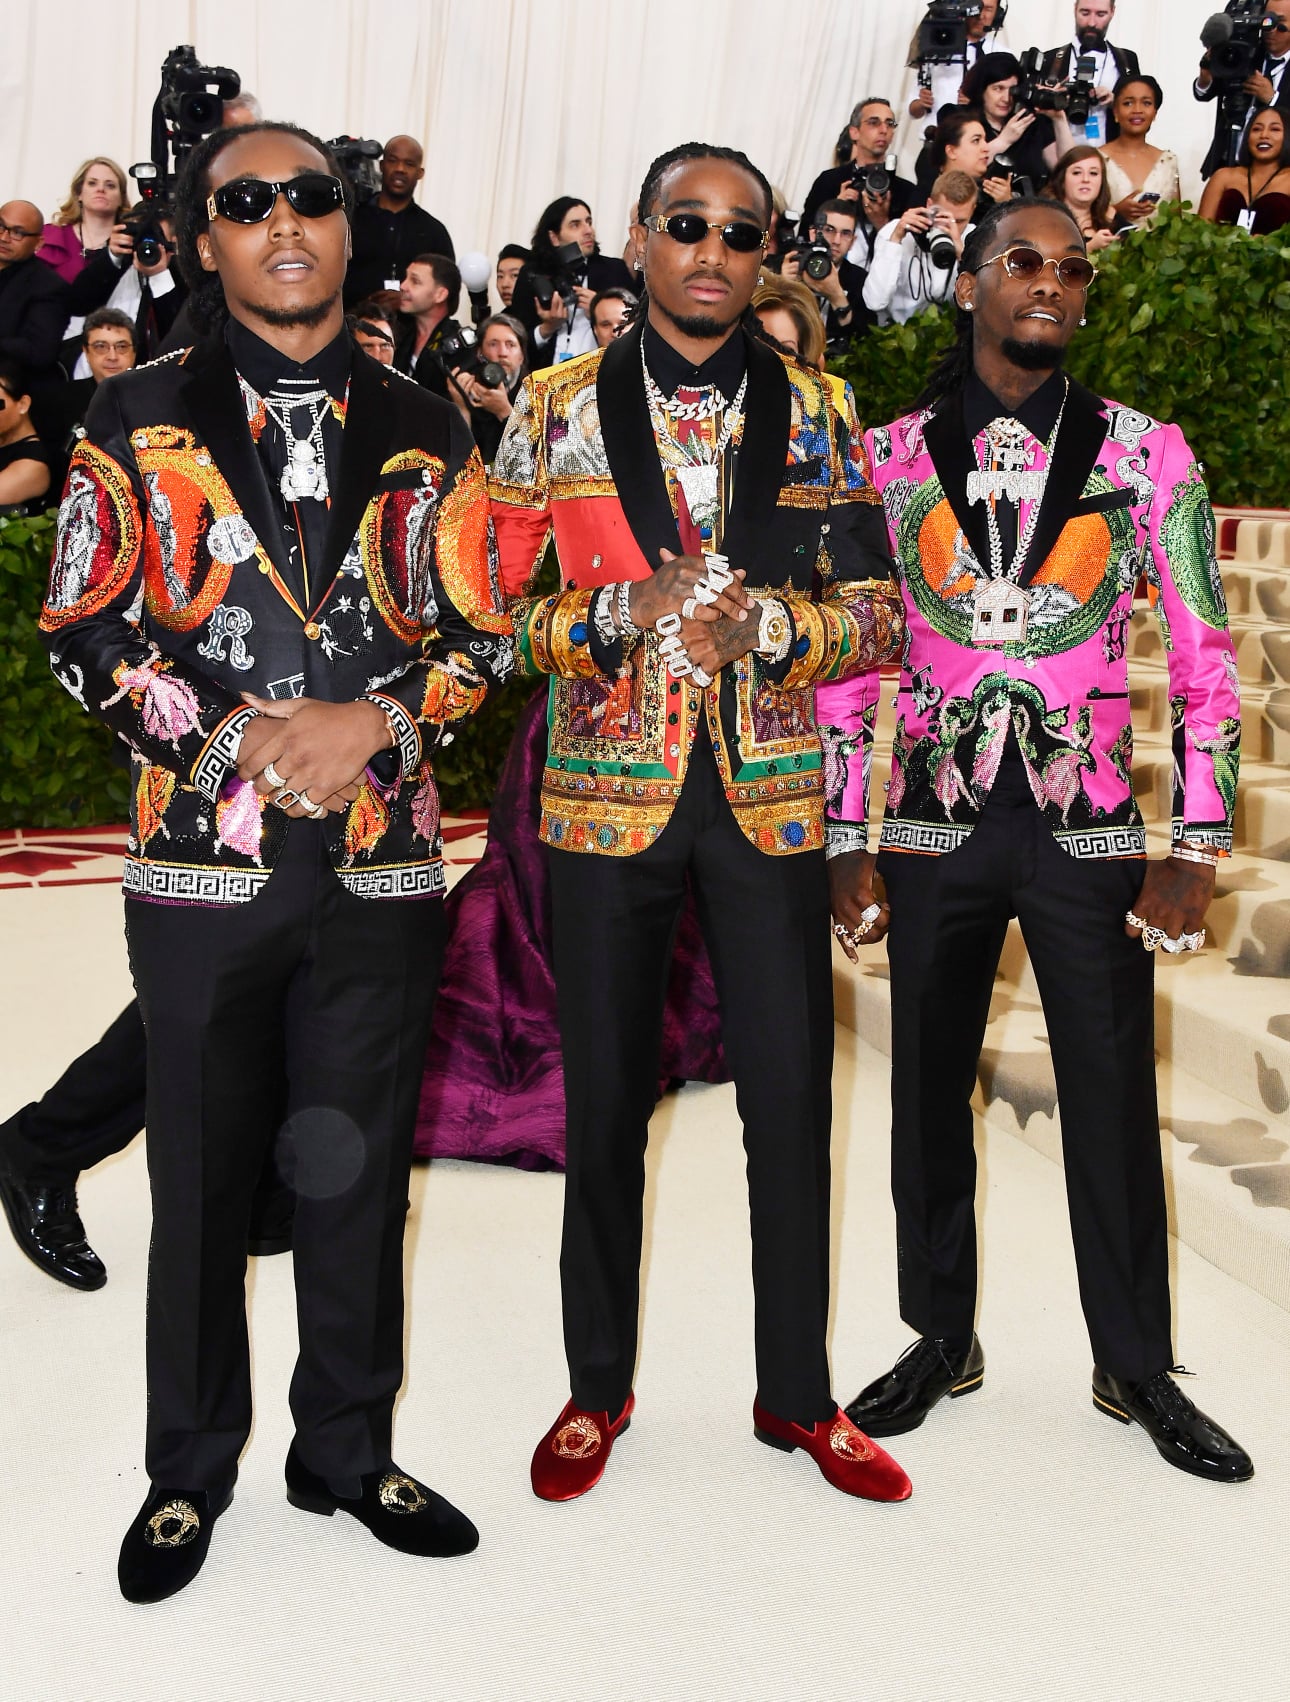 Các nam rapper da màu Takeoff, Quavo, Offset xuất hiện như một nhóm nhạc với những chiếc áo vest được nạm đính đá quý, mang màu sắc sặc sỡ.